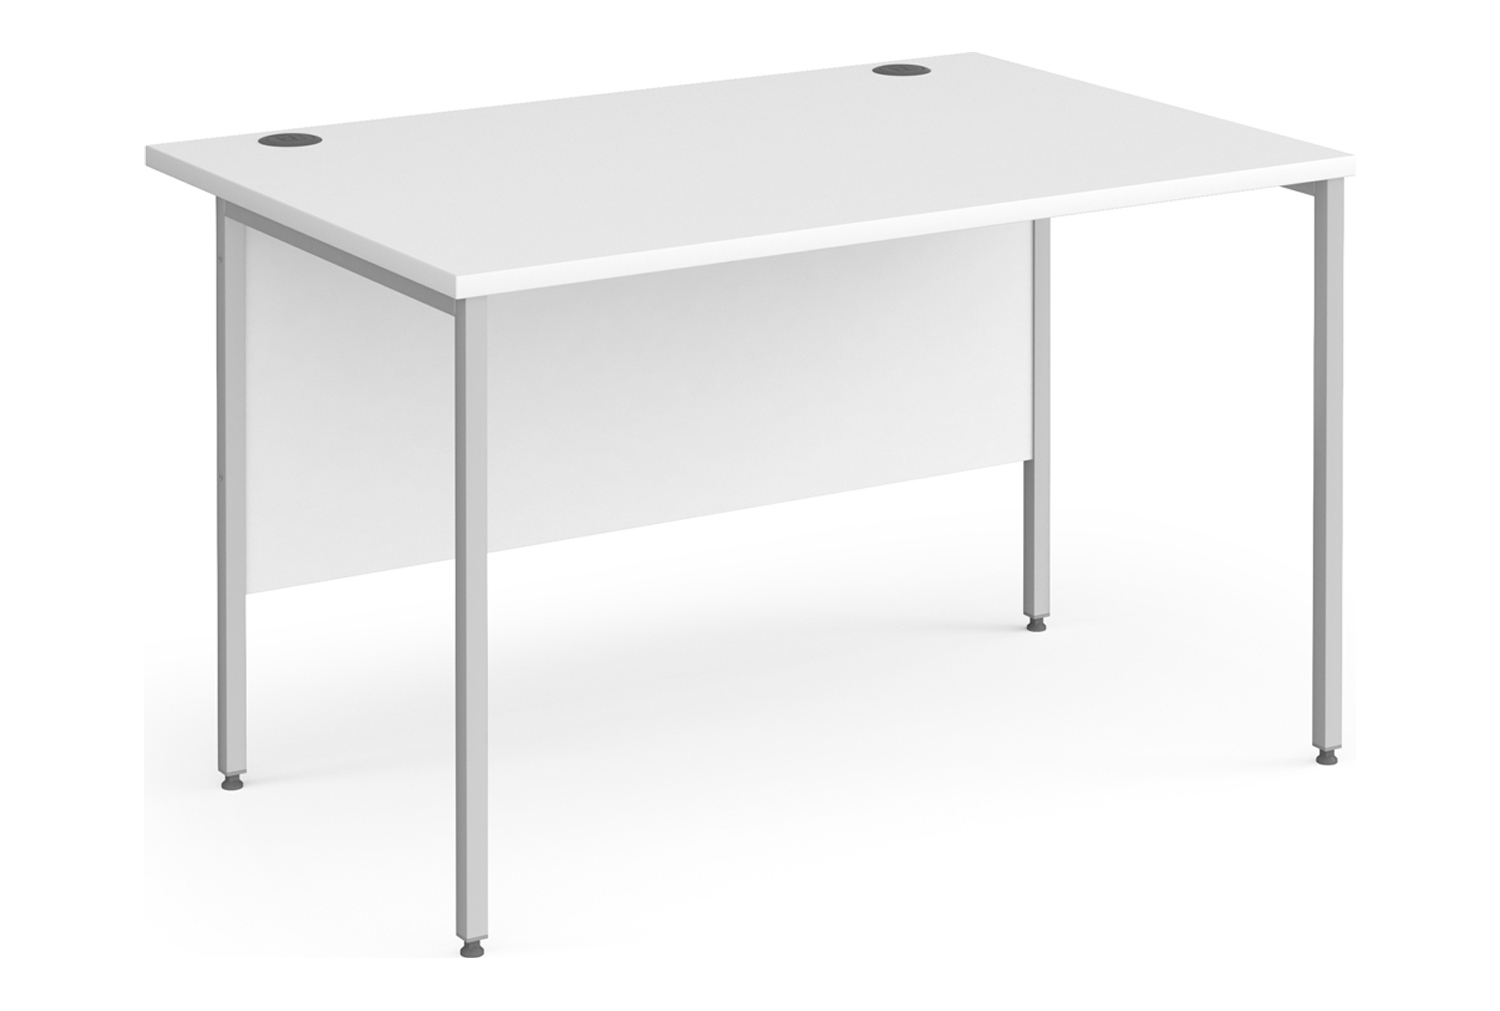 Value Line Classic+ Rectangular H-Leg Office Desk (Silver Leg), 120wx80dx73h (cm), White, Fully Installed